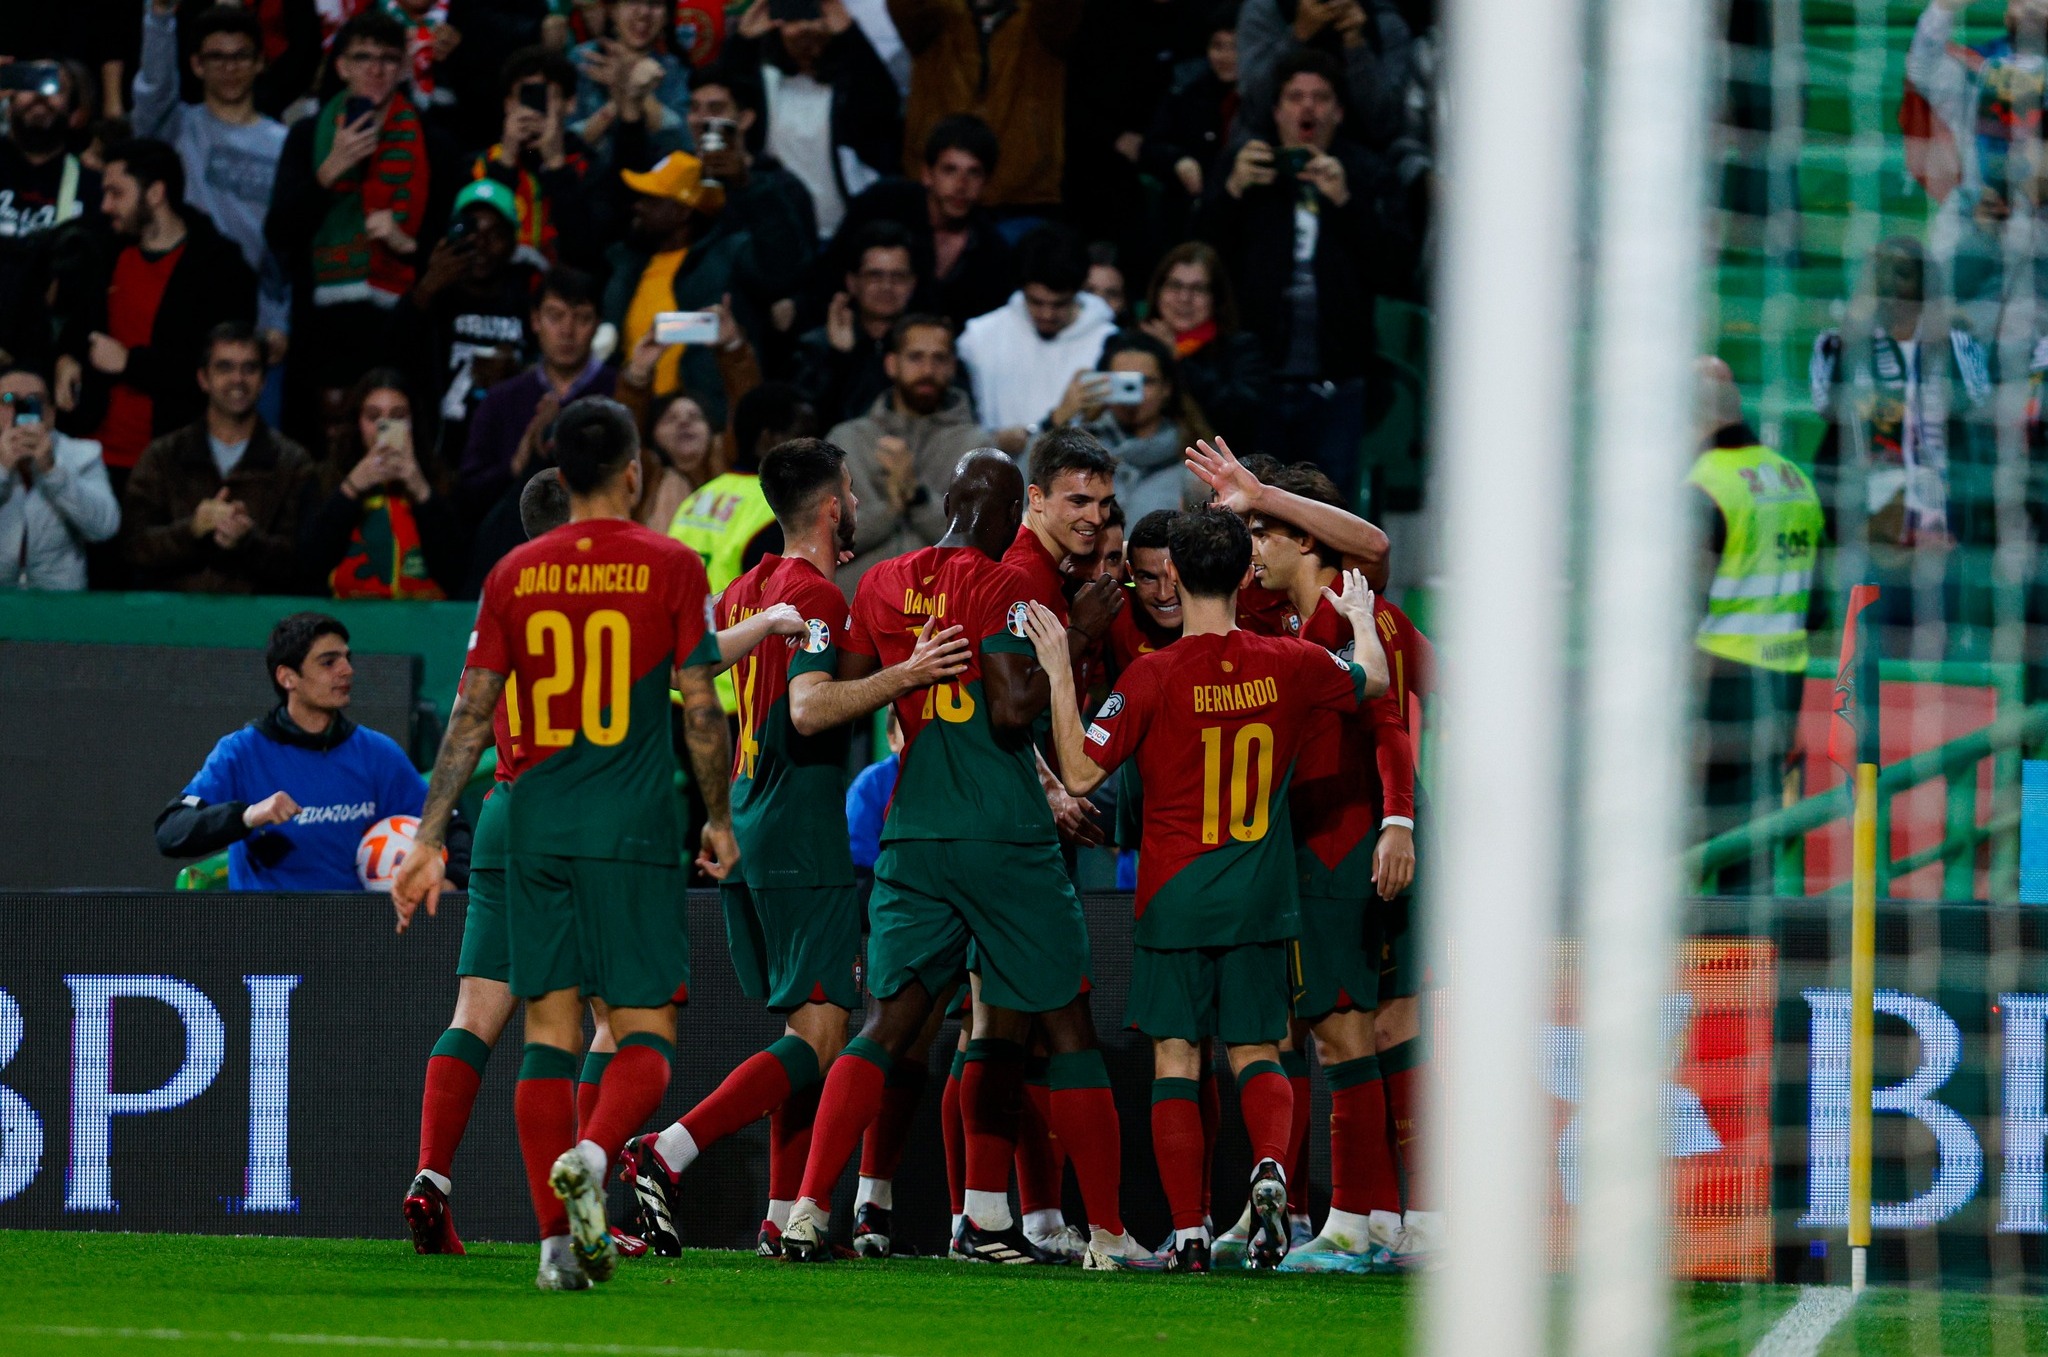 Seleções de Portugal - Novo recorde: 10 jogos, 10 vitórias ✓  #VesteABandeira New record: 10 matches, 10 wins ✓ #WearTheFlag